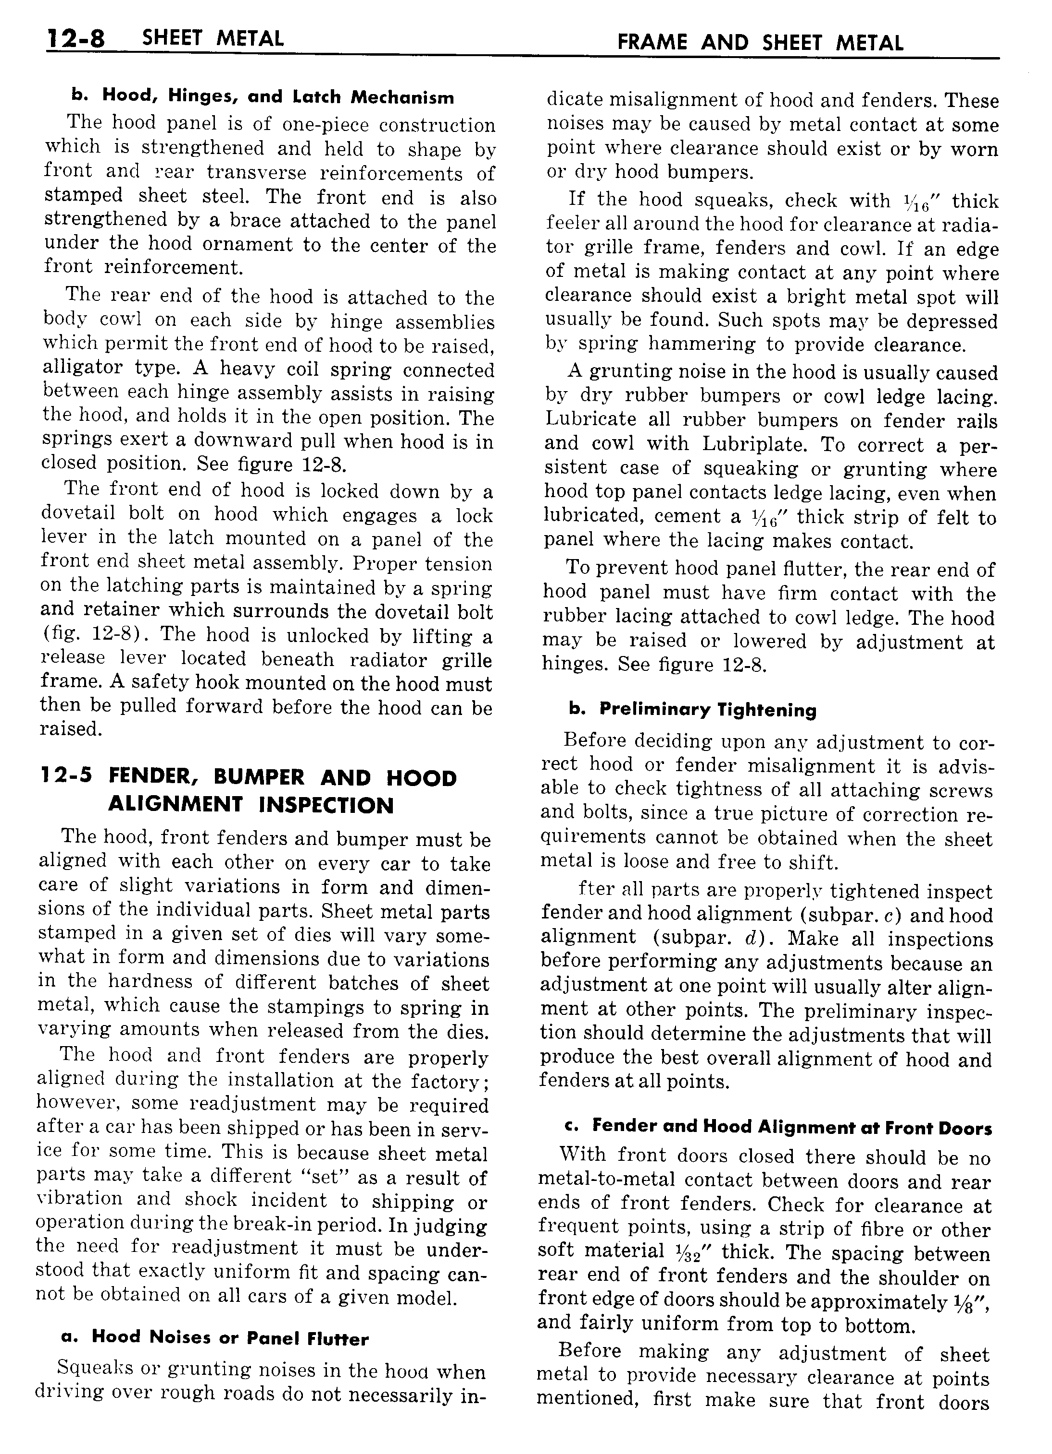 n_13 1957 Buick Shop Manual - Frame & Sheet Metal-008-008.jpg